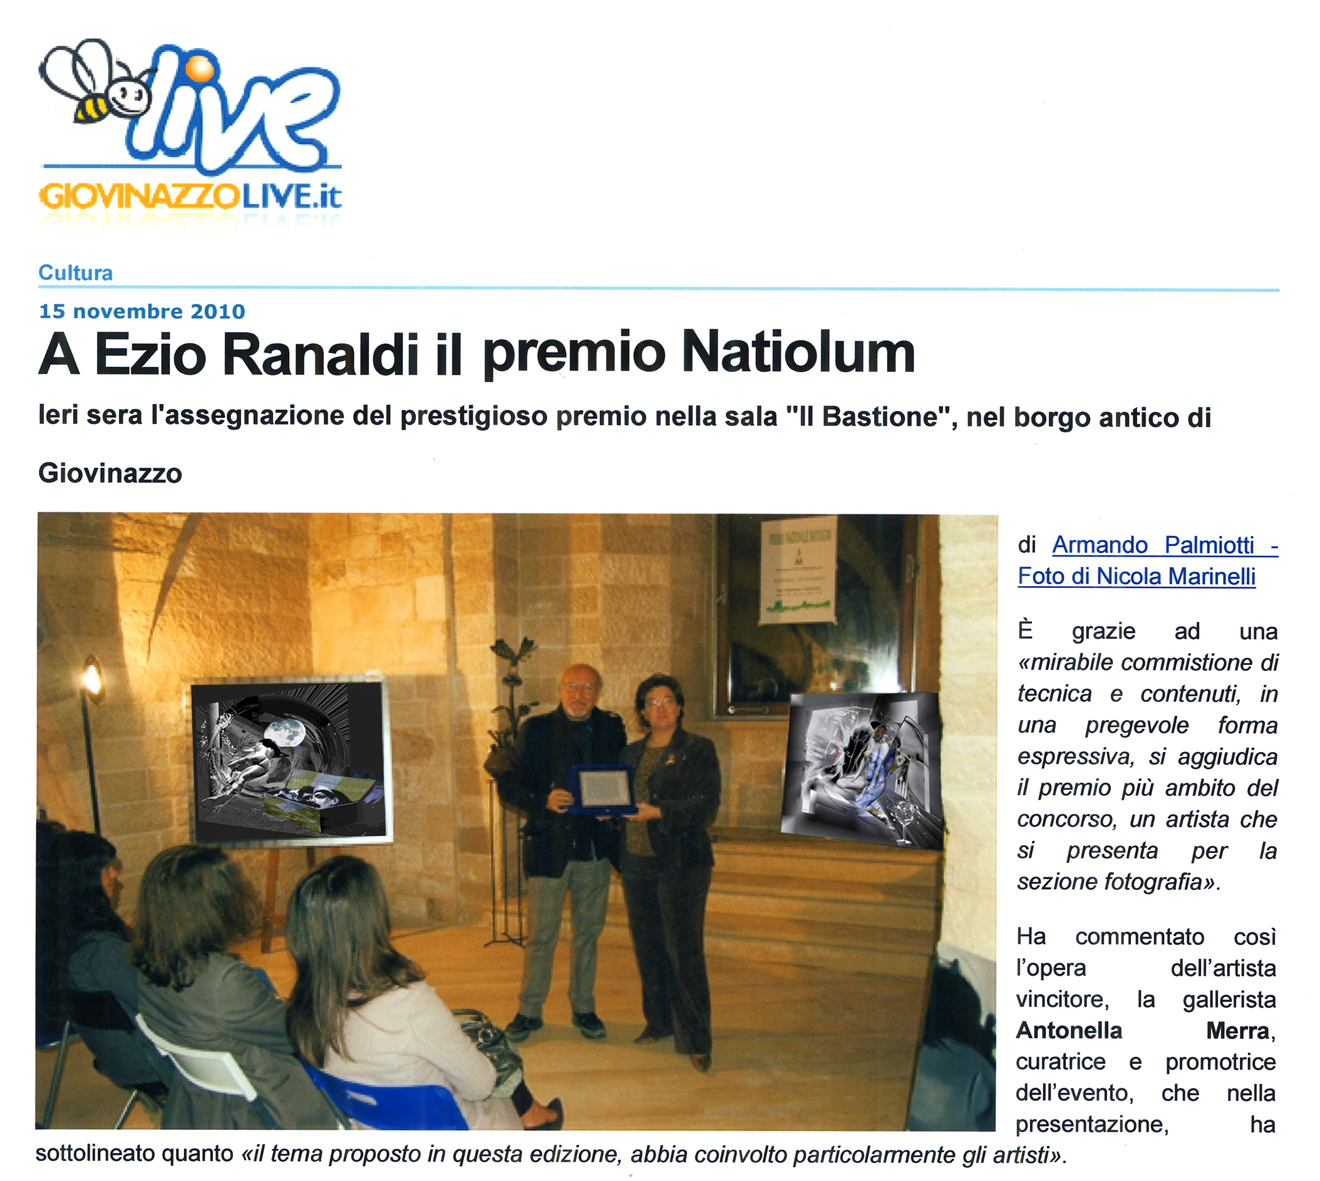 Ezio Ranaldi – premio natiolum 2010 foto copia